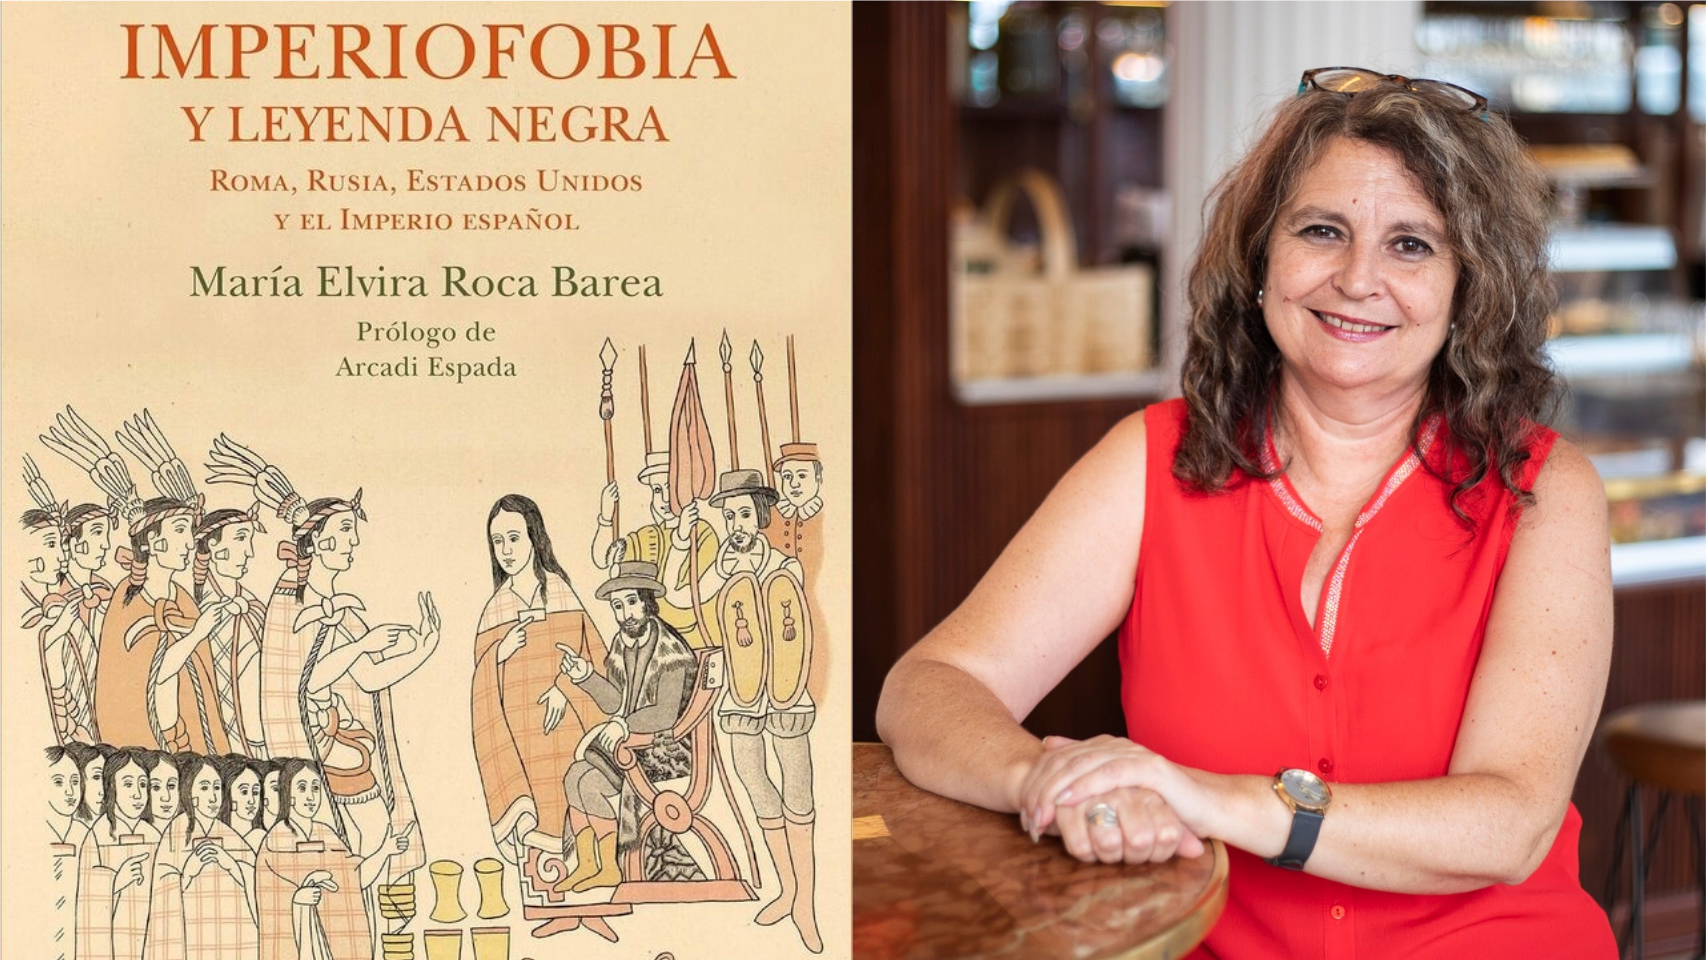 Elvira Roca Barea es autora del exitoso 'Imperiofobia y leyenda negra'.